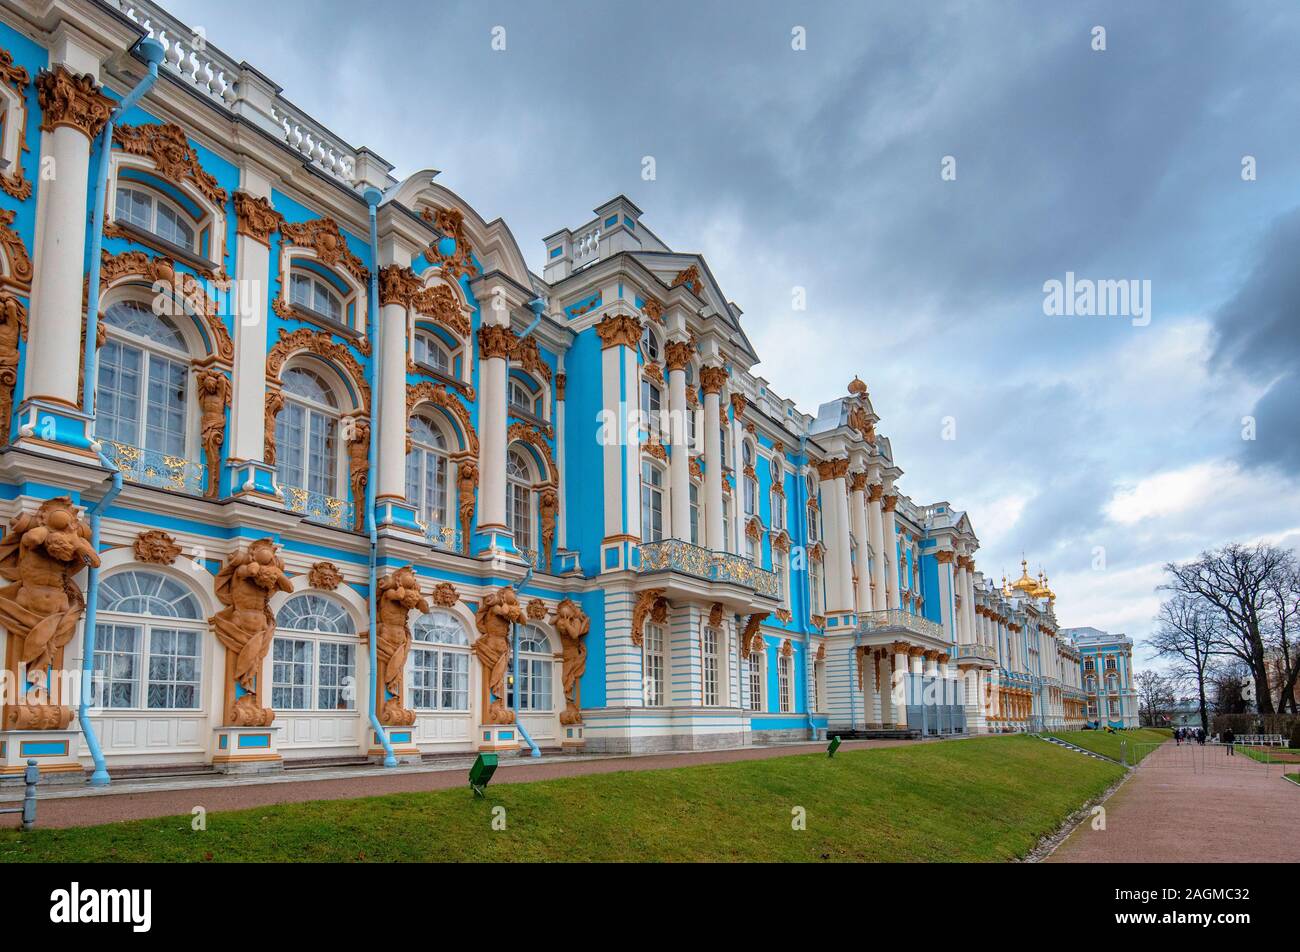 Die Catherine Palace, in der Stadt von Zarskoje Selo befindet. Russische Residenz von Romanov Zaren in Zarskoje Selo (Puschkin), Sankt Petersburg, Russland Stockfoto